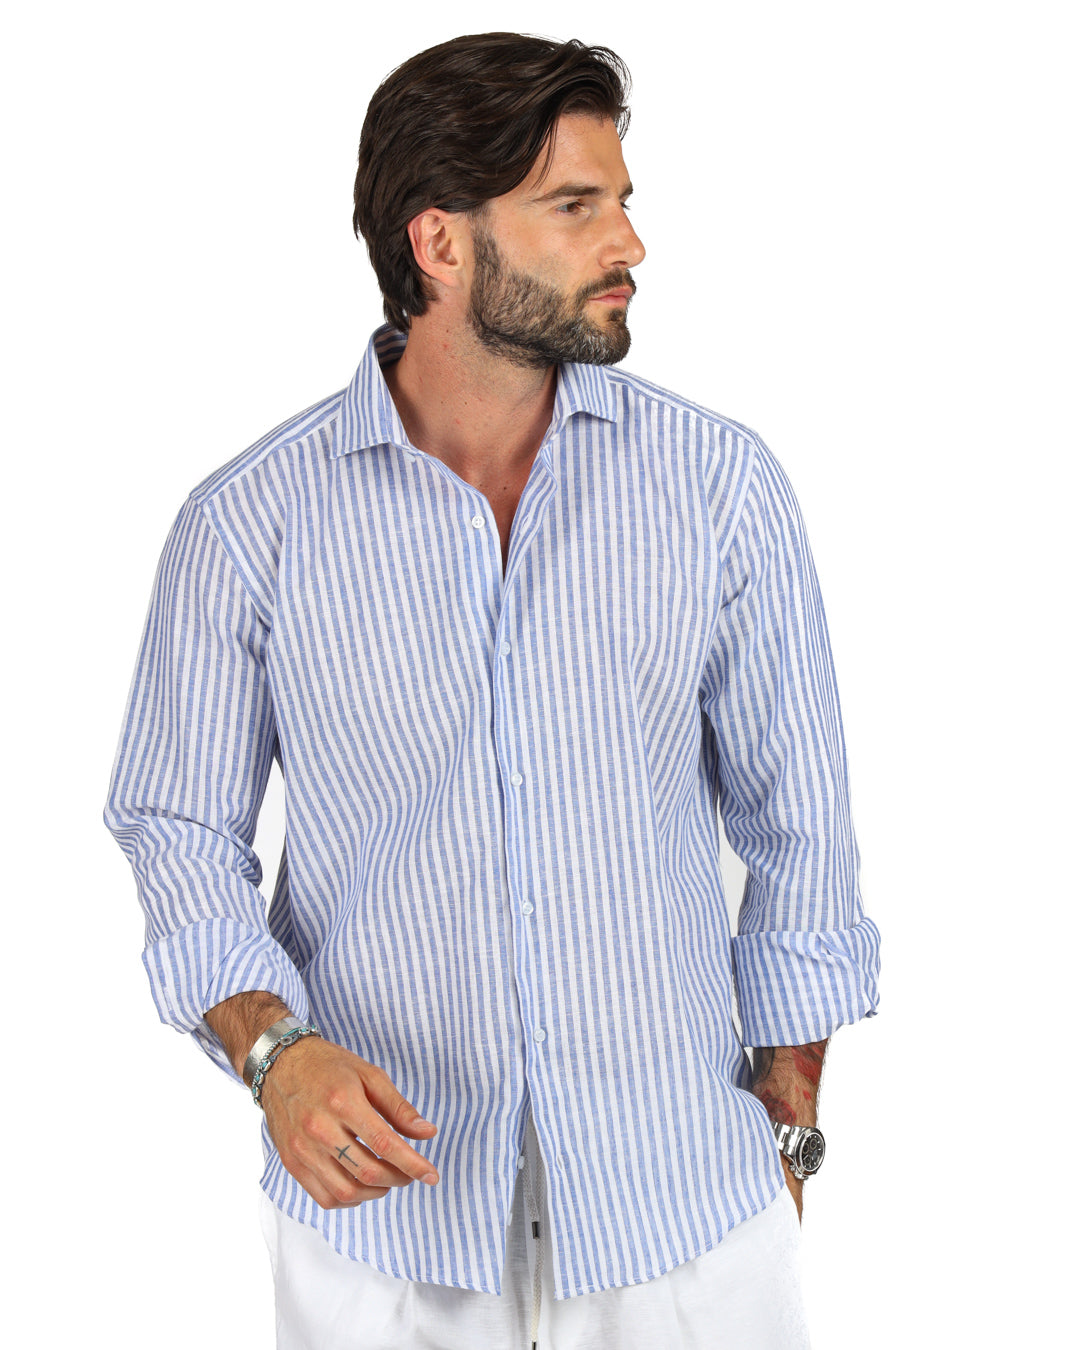 Ischia - Camicia classica righe strette azzurre in lino